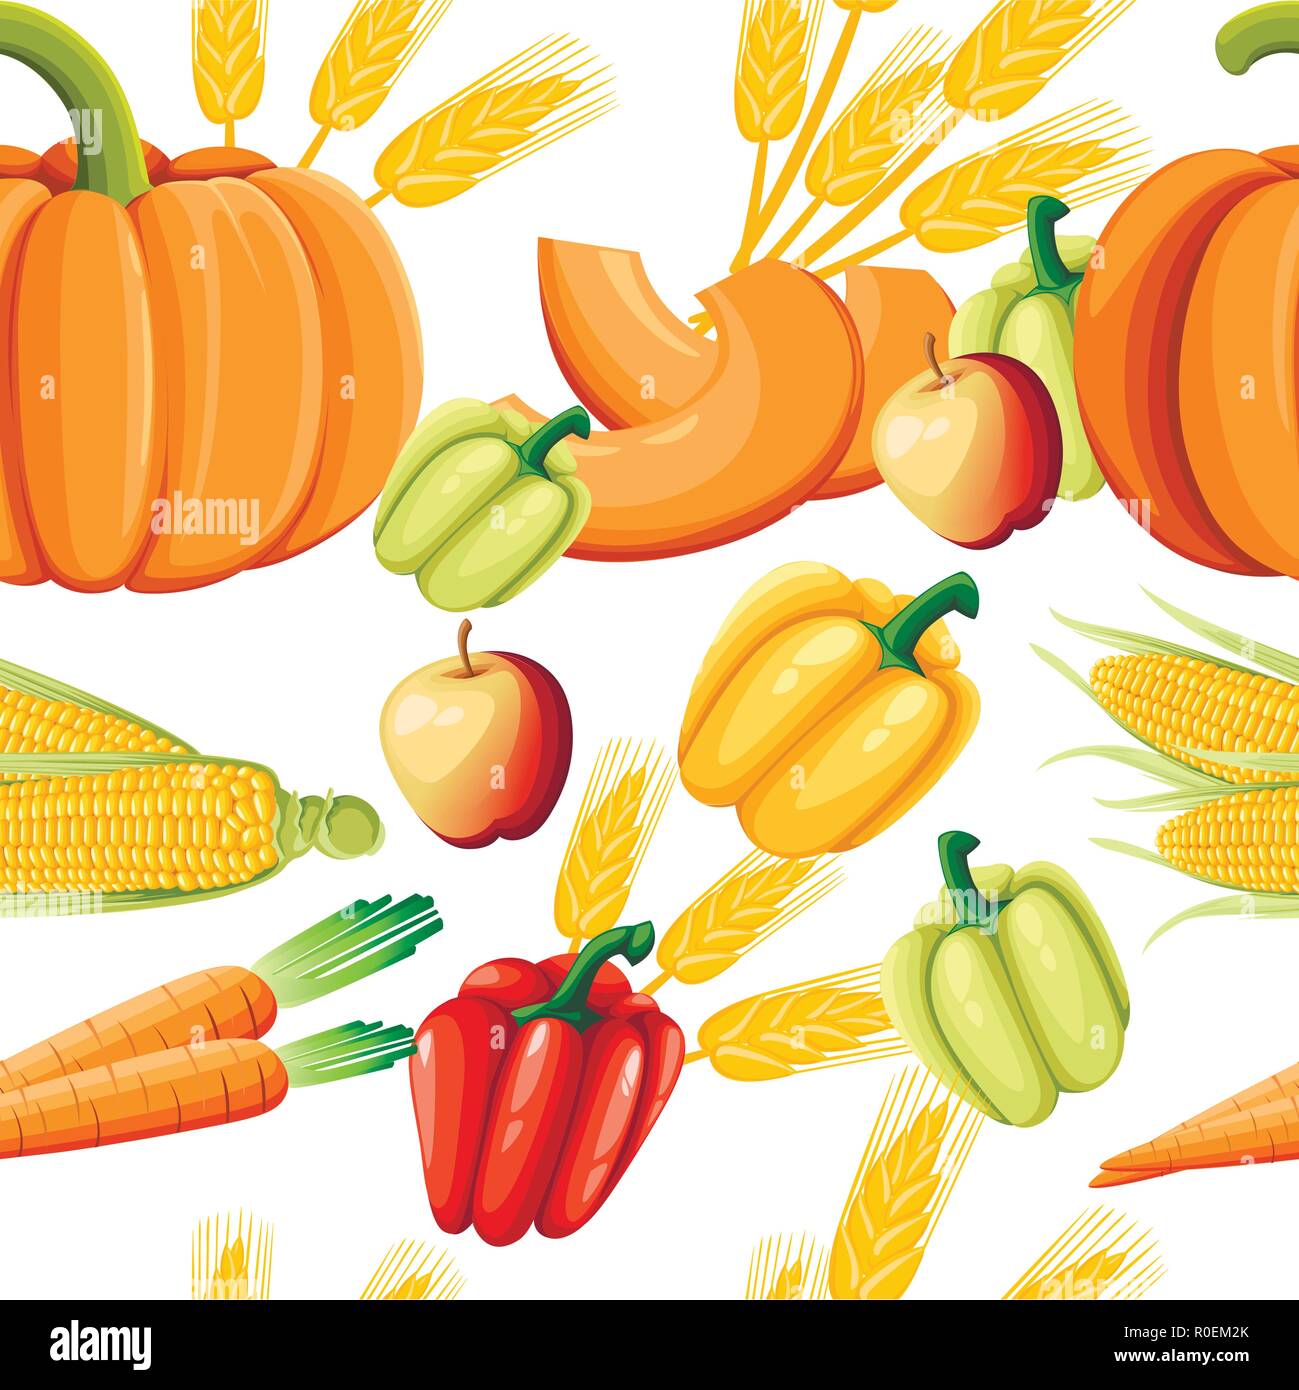 Nahtlose Muster von frischem Gemüse. Pfeffer, Kürbis, Karotten und Mais. Gesundes Essen Flat Style. Vector Illustration auf weißem Hintergrund. Stock Vektor